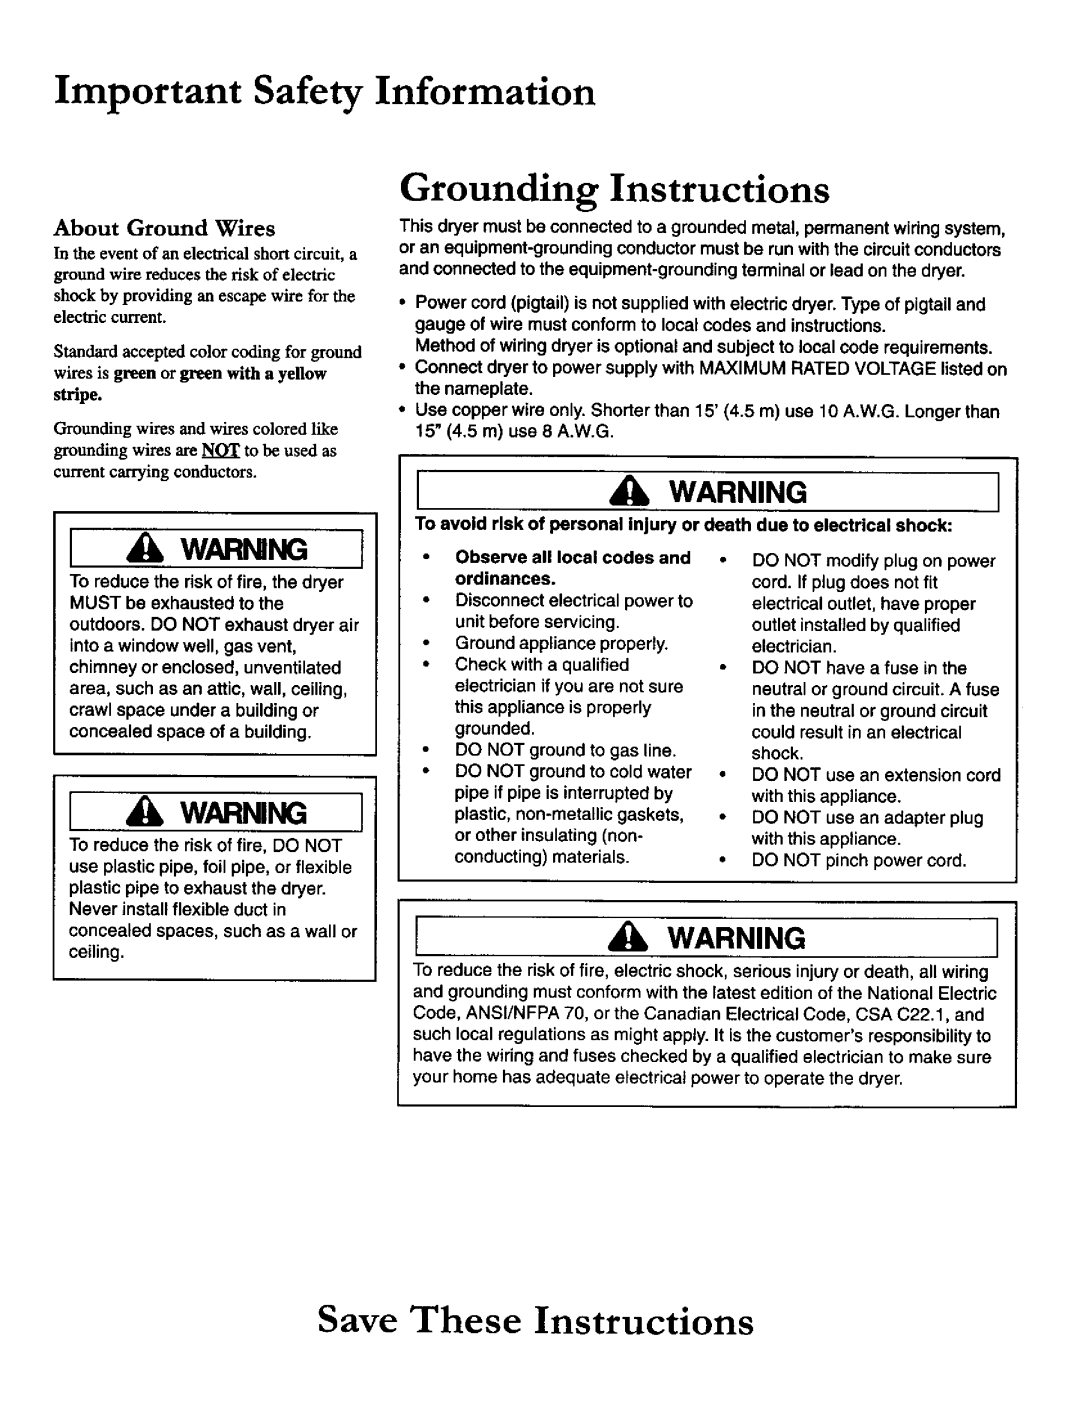 Amana 40086101 owner manual Important Safety, Information Grounding Instructions, Save These Instructions, Warningi 